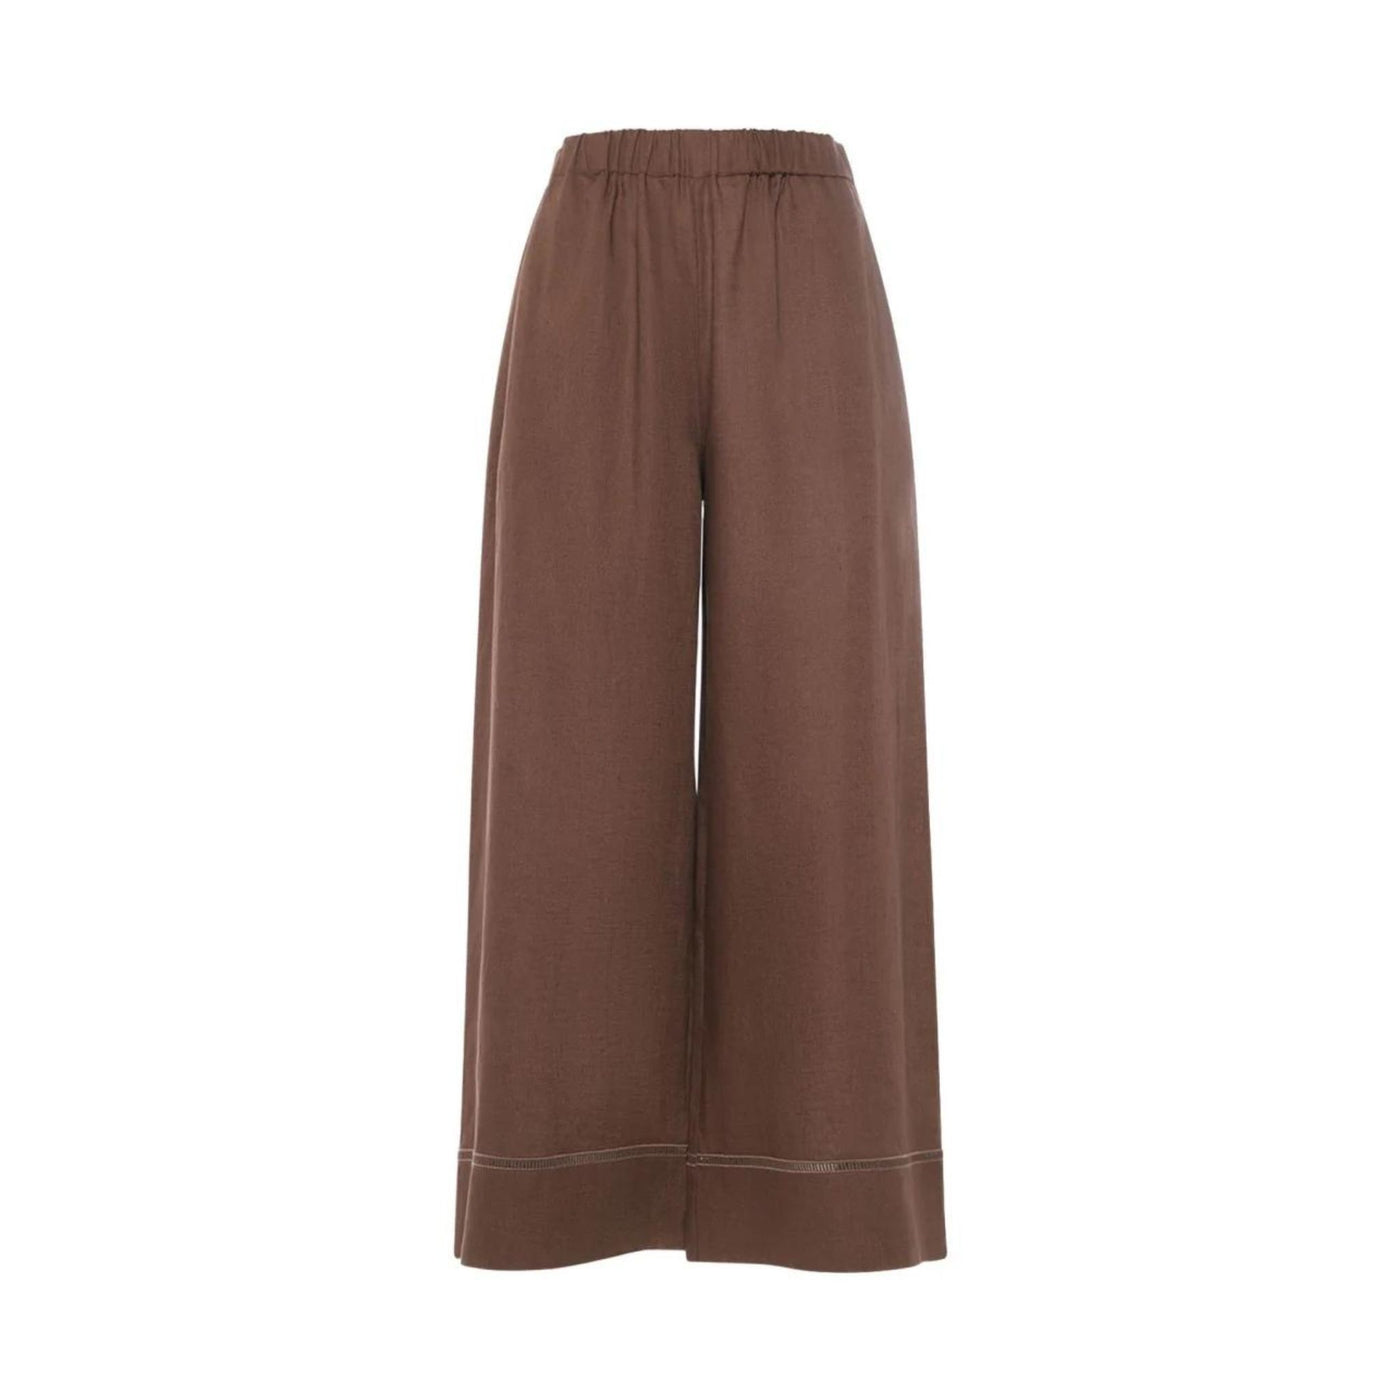 Pantalone Donna ampio in fresco lino con vita elasticizzata